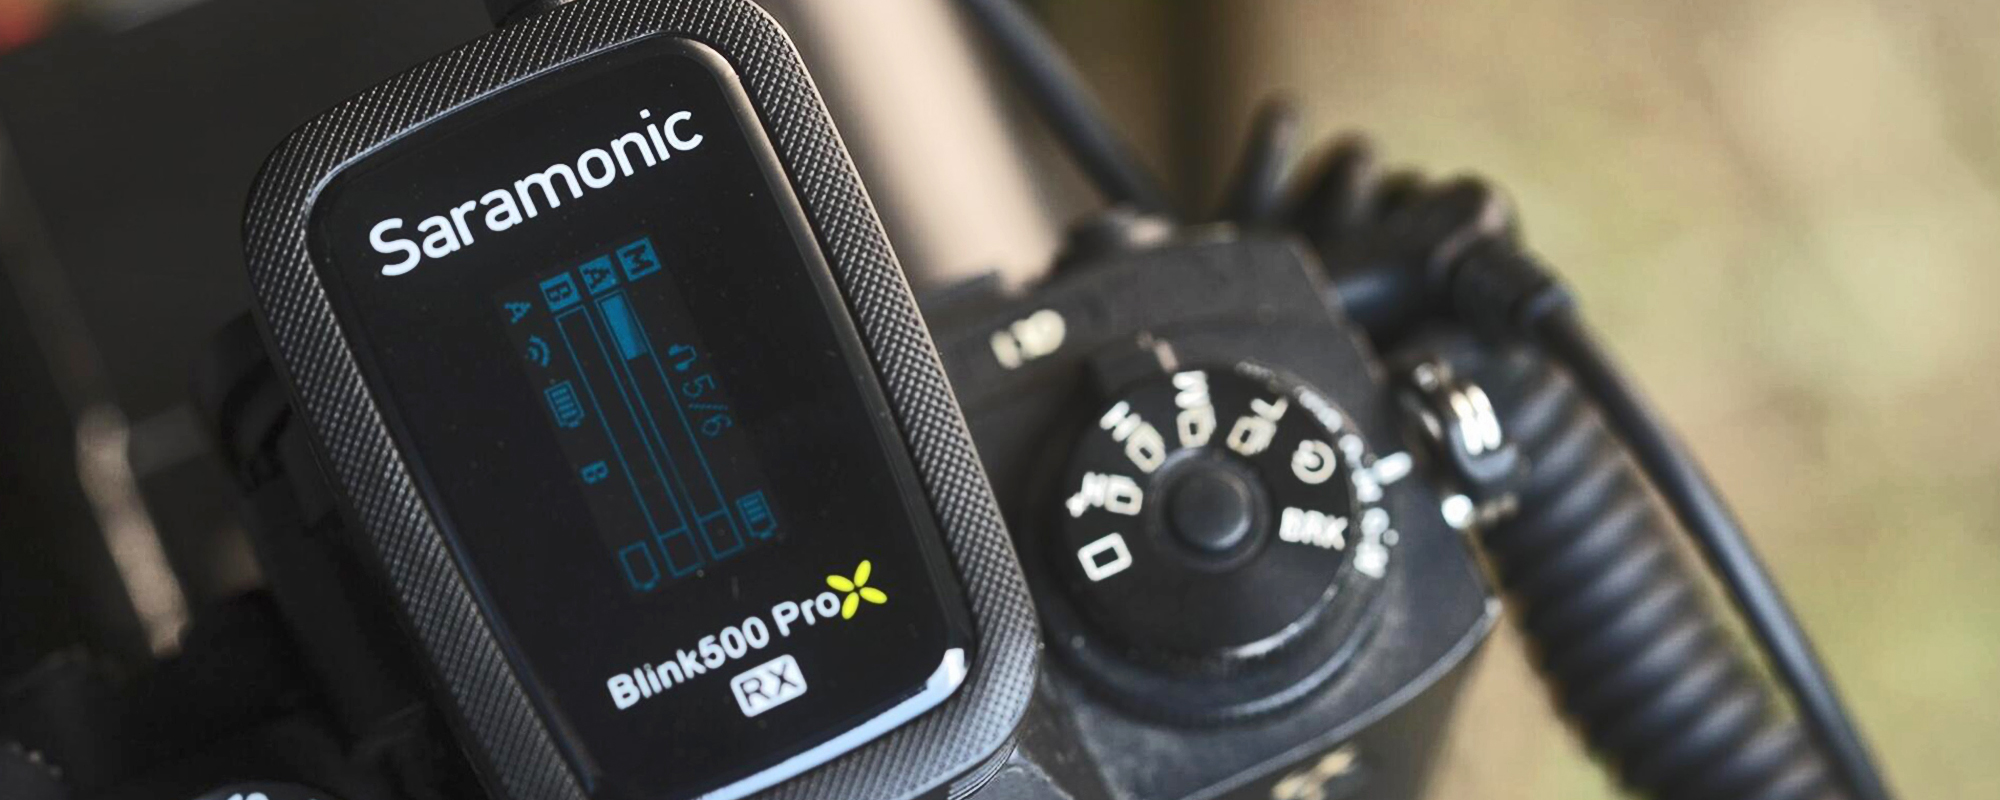 Zestaw do bezprzewodowej transmisji dźwięku Saramonic Blink500 ProX Q1 (RX + TX)